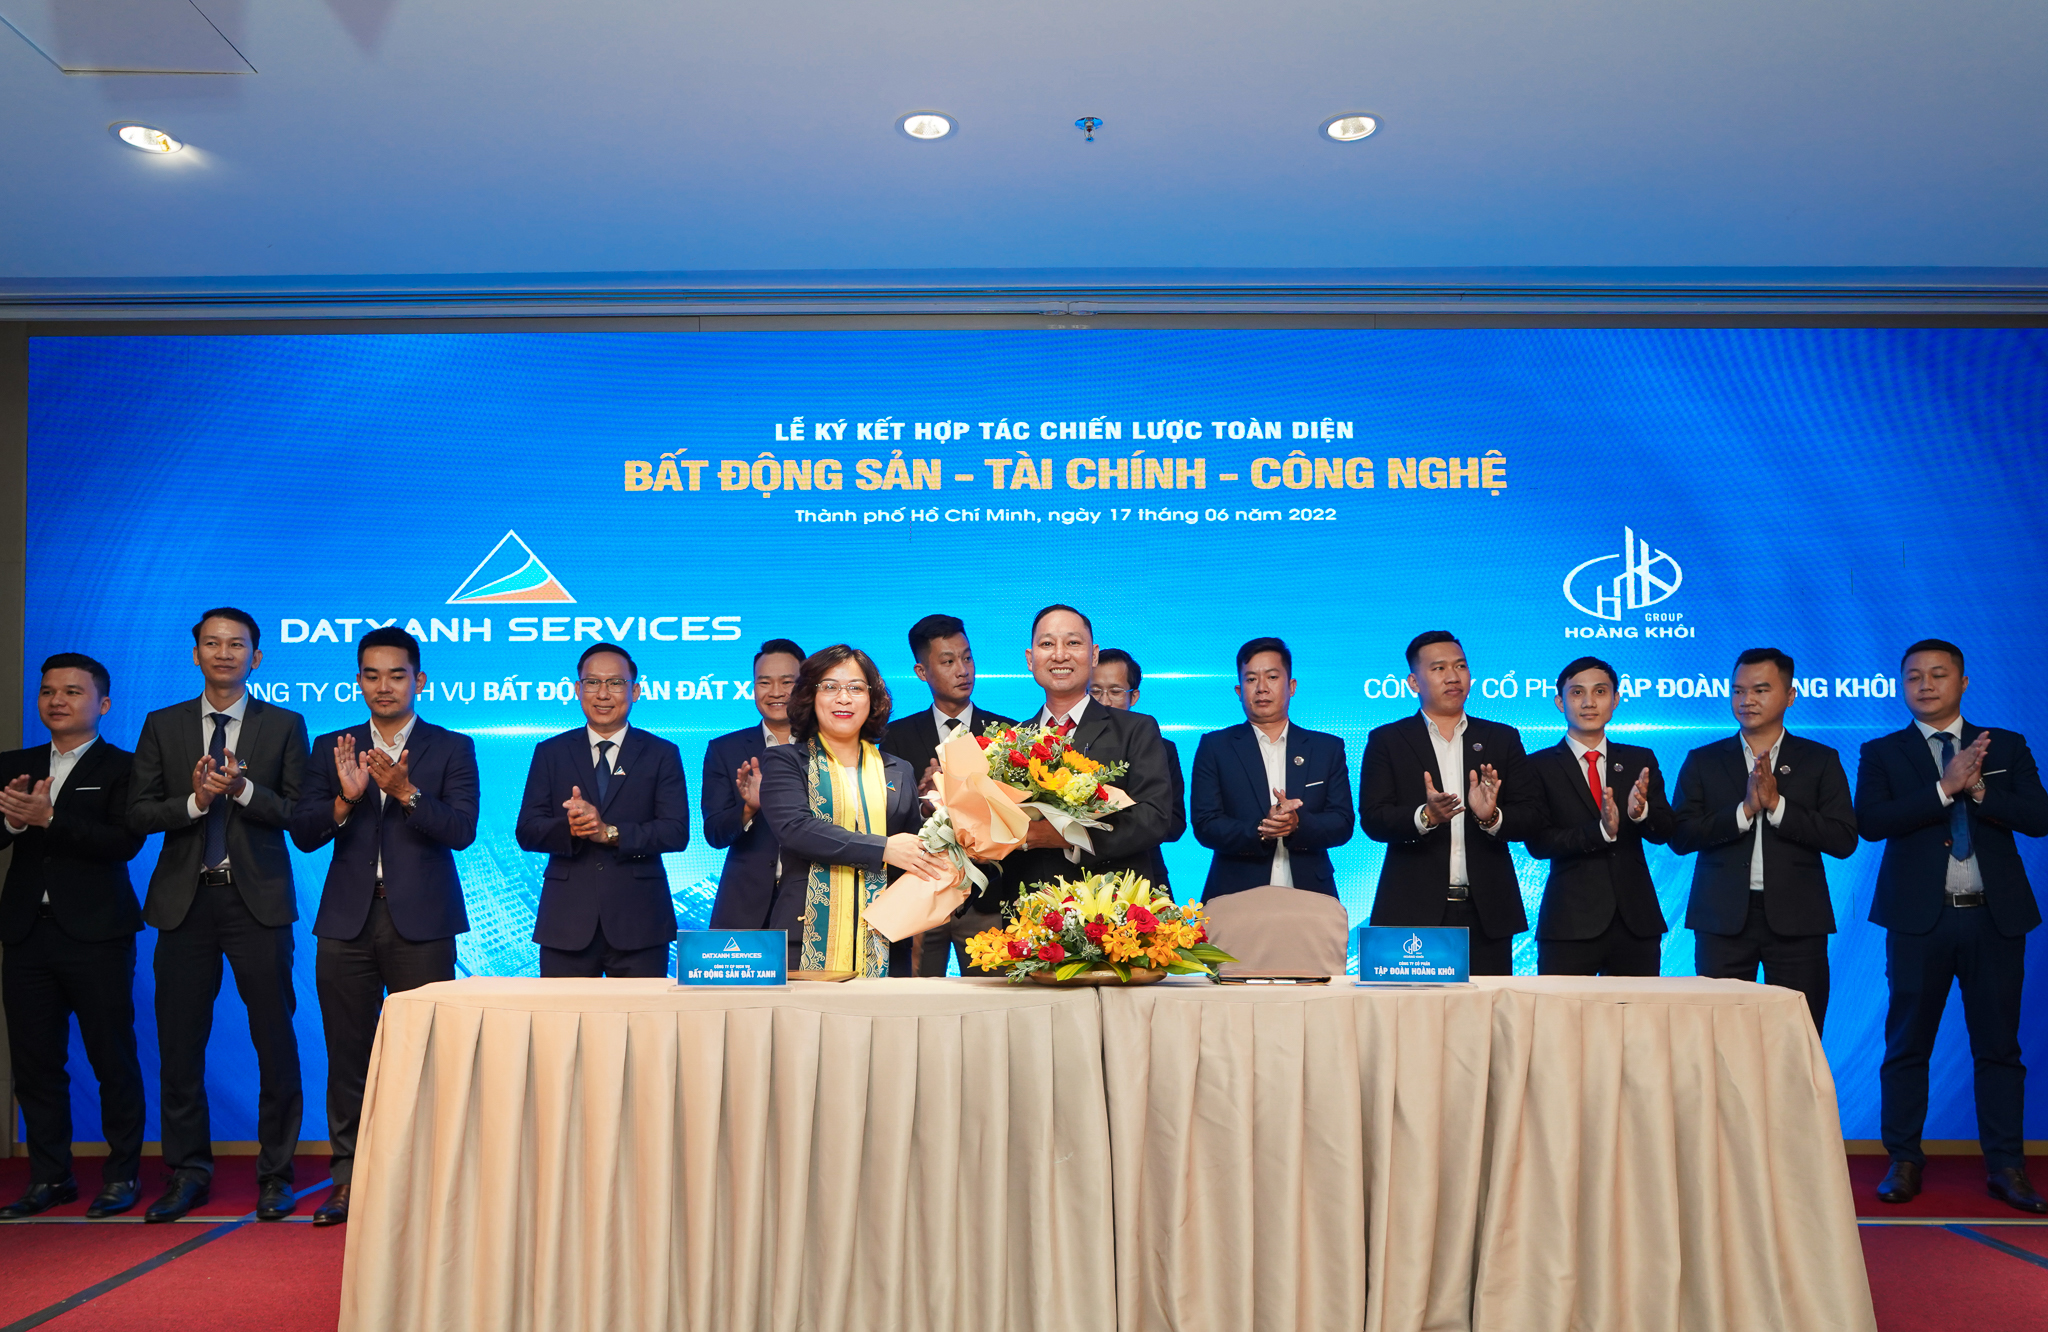 Dat Xanh Services ký kết hợp tác chiến lược toàn diện với Hoàng Khôi Group